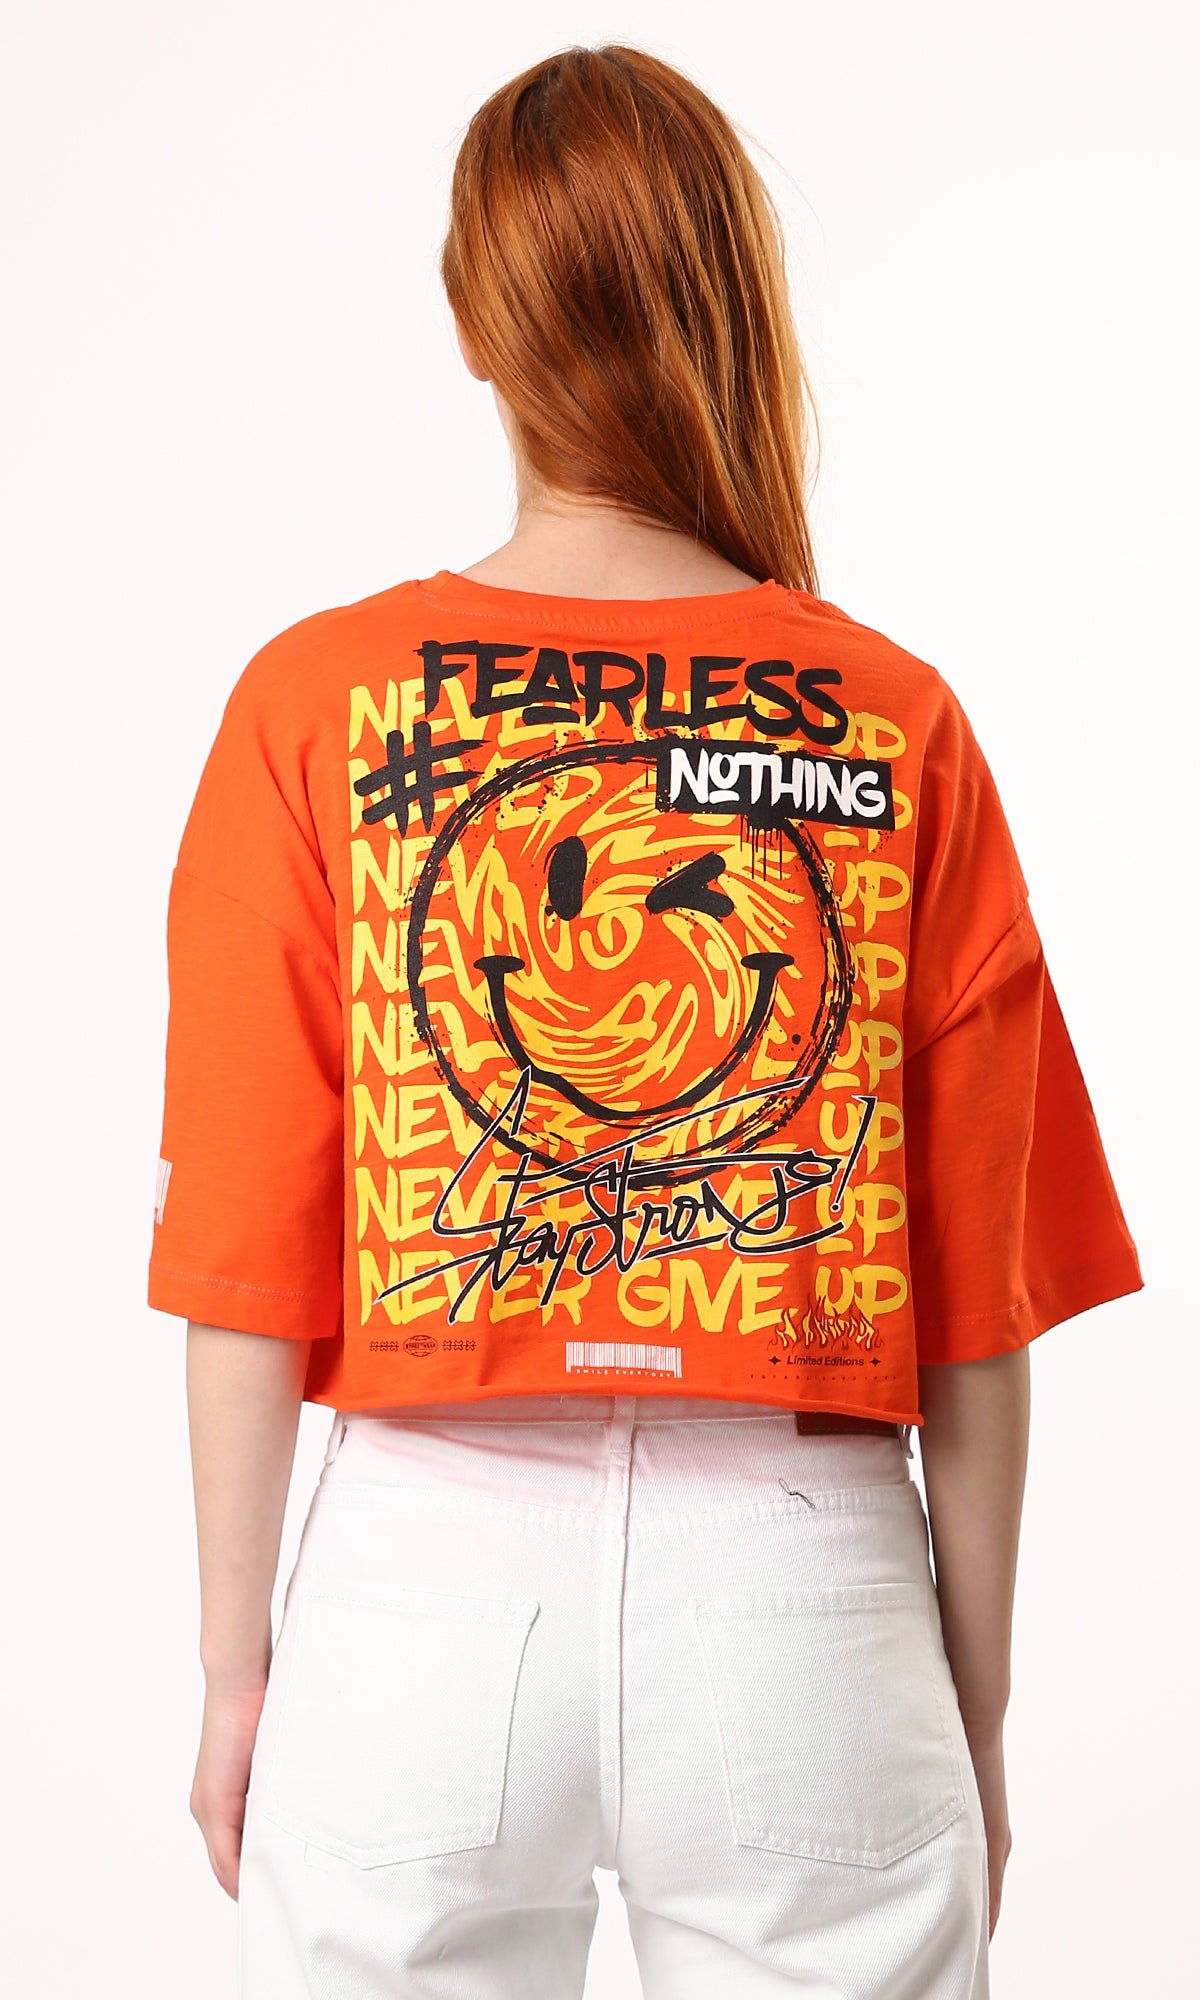 O180448 Printed "Fearless Nothing" Printed Loose Tee - Hot Orange